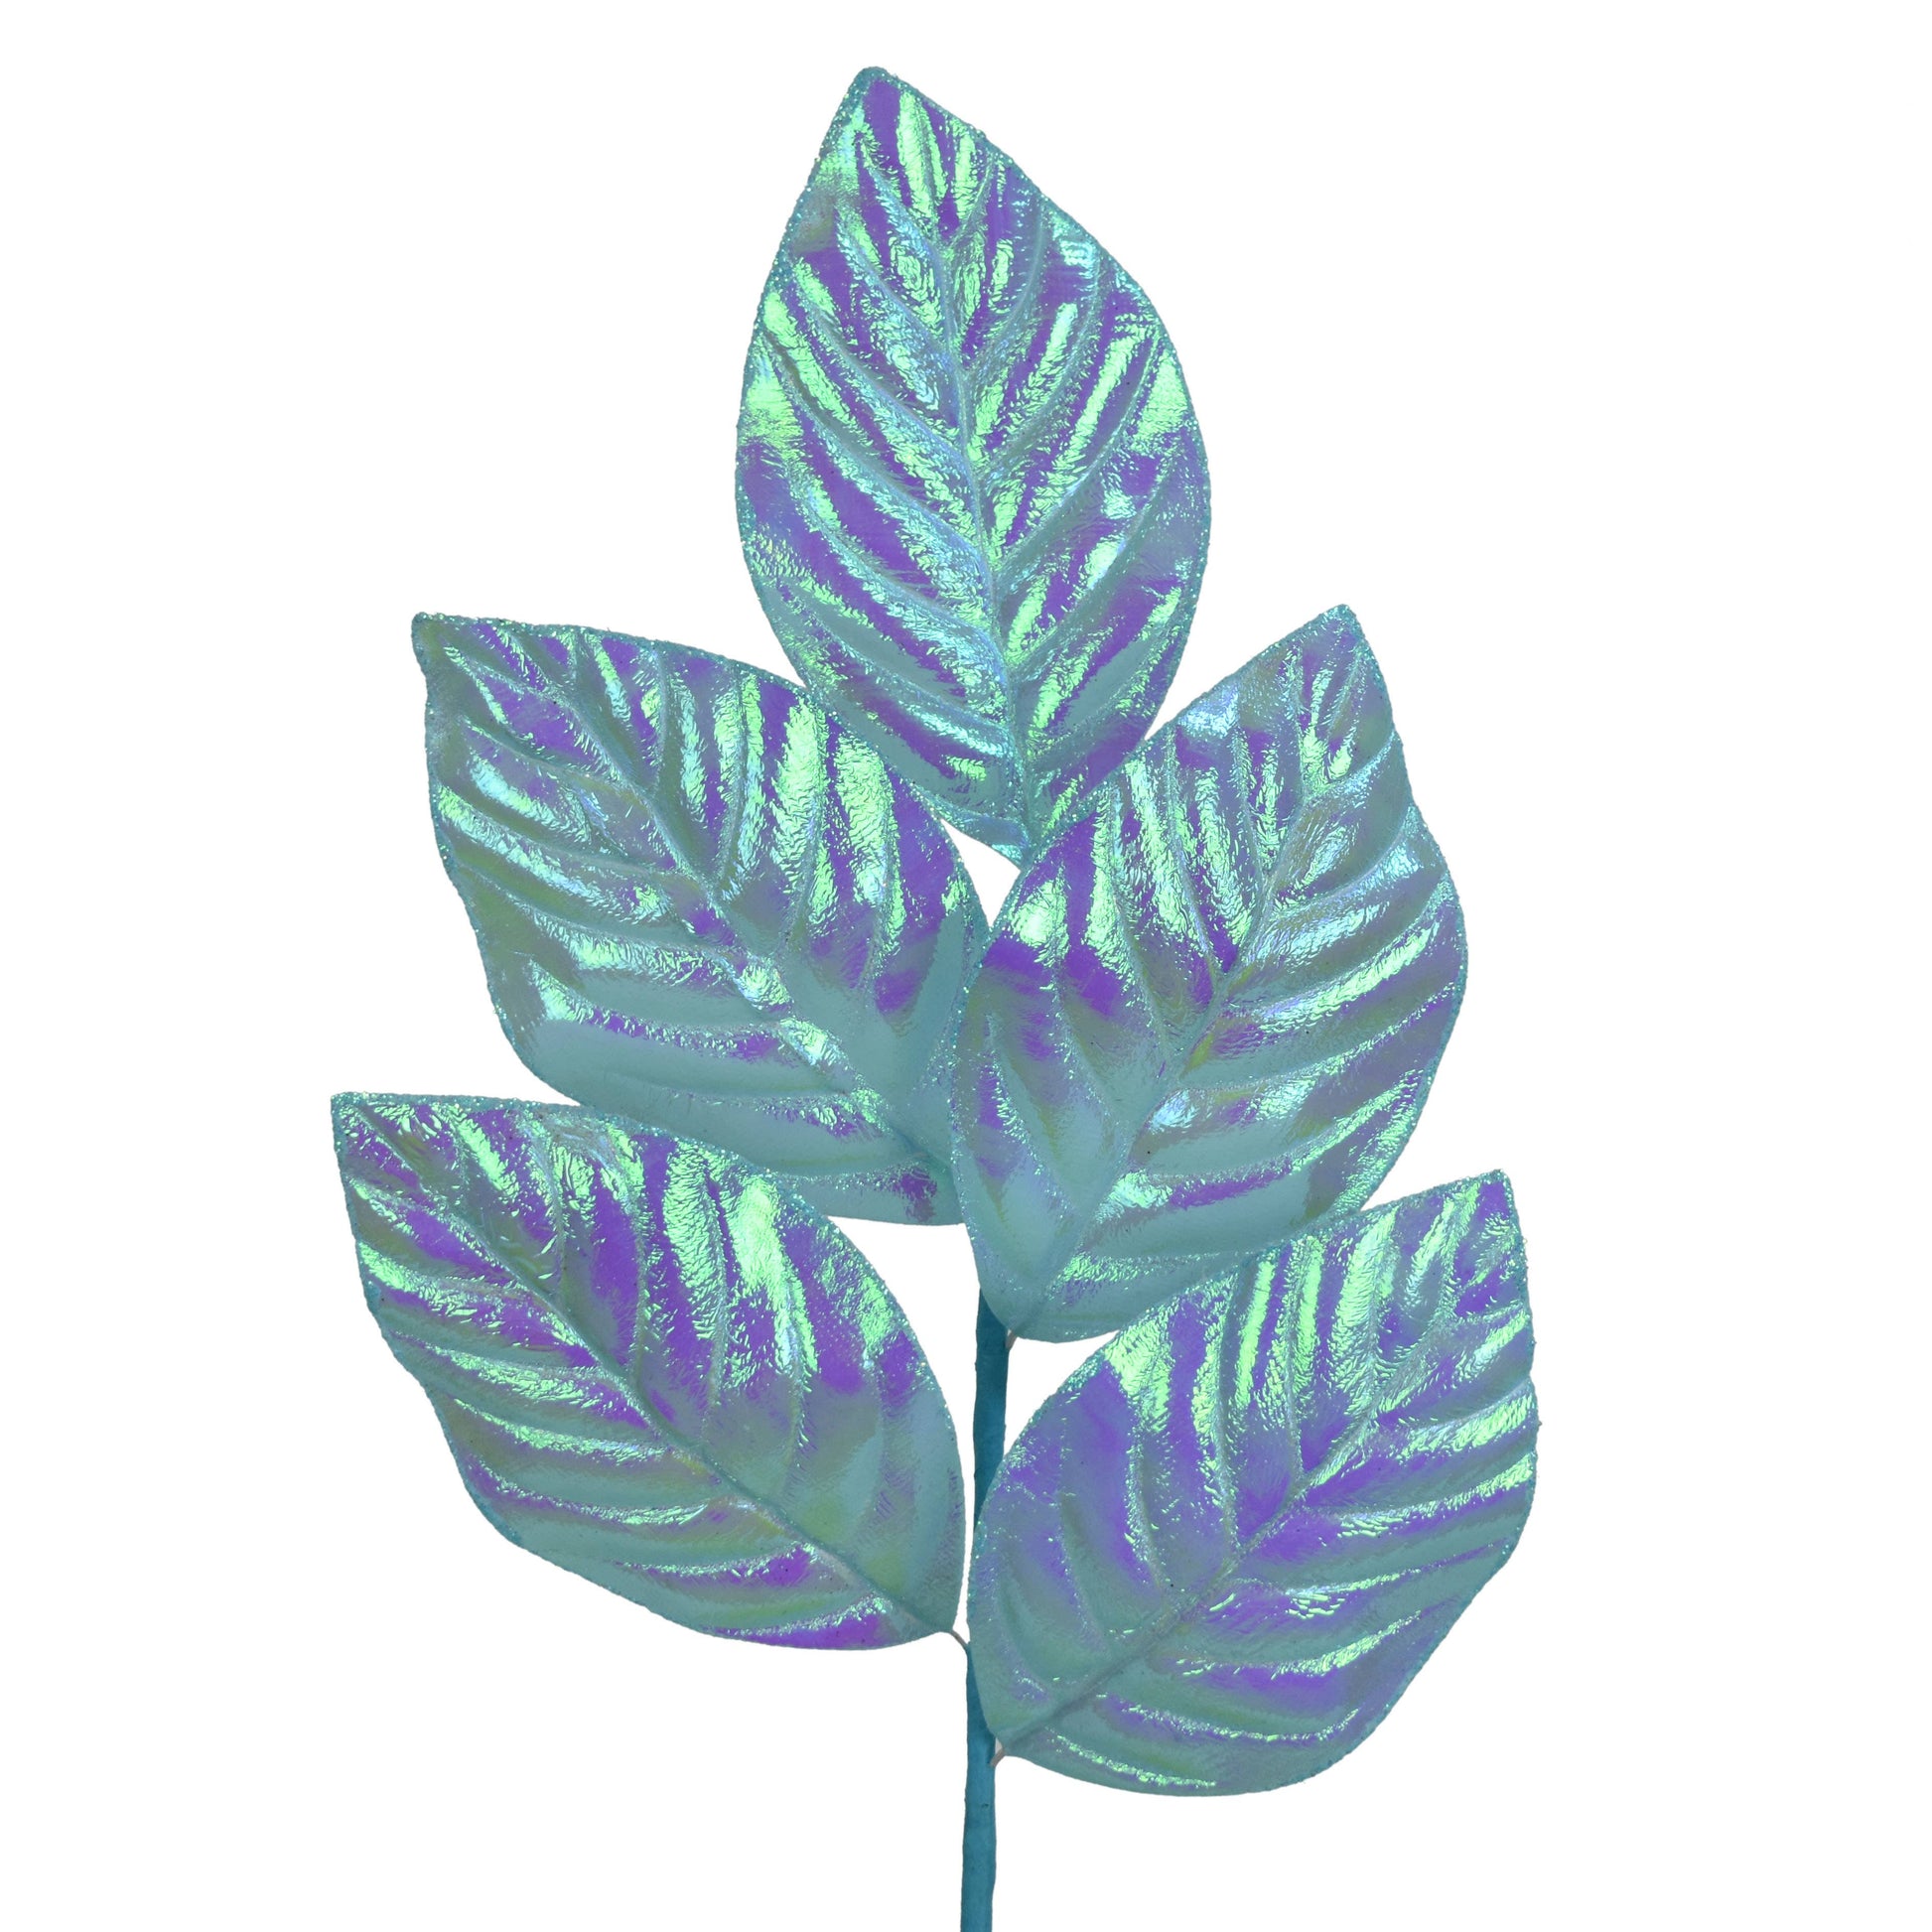 Blue Iridescent magnolia leaf